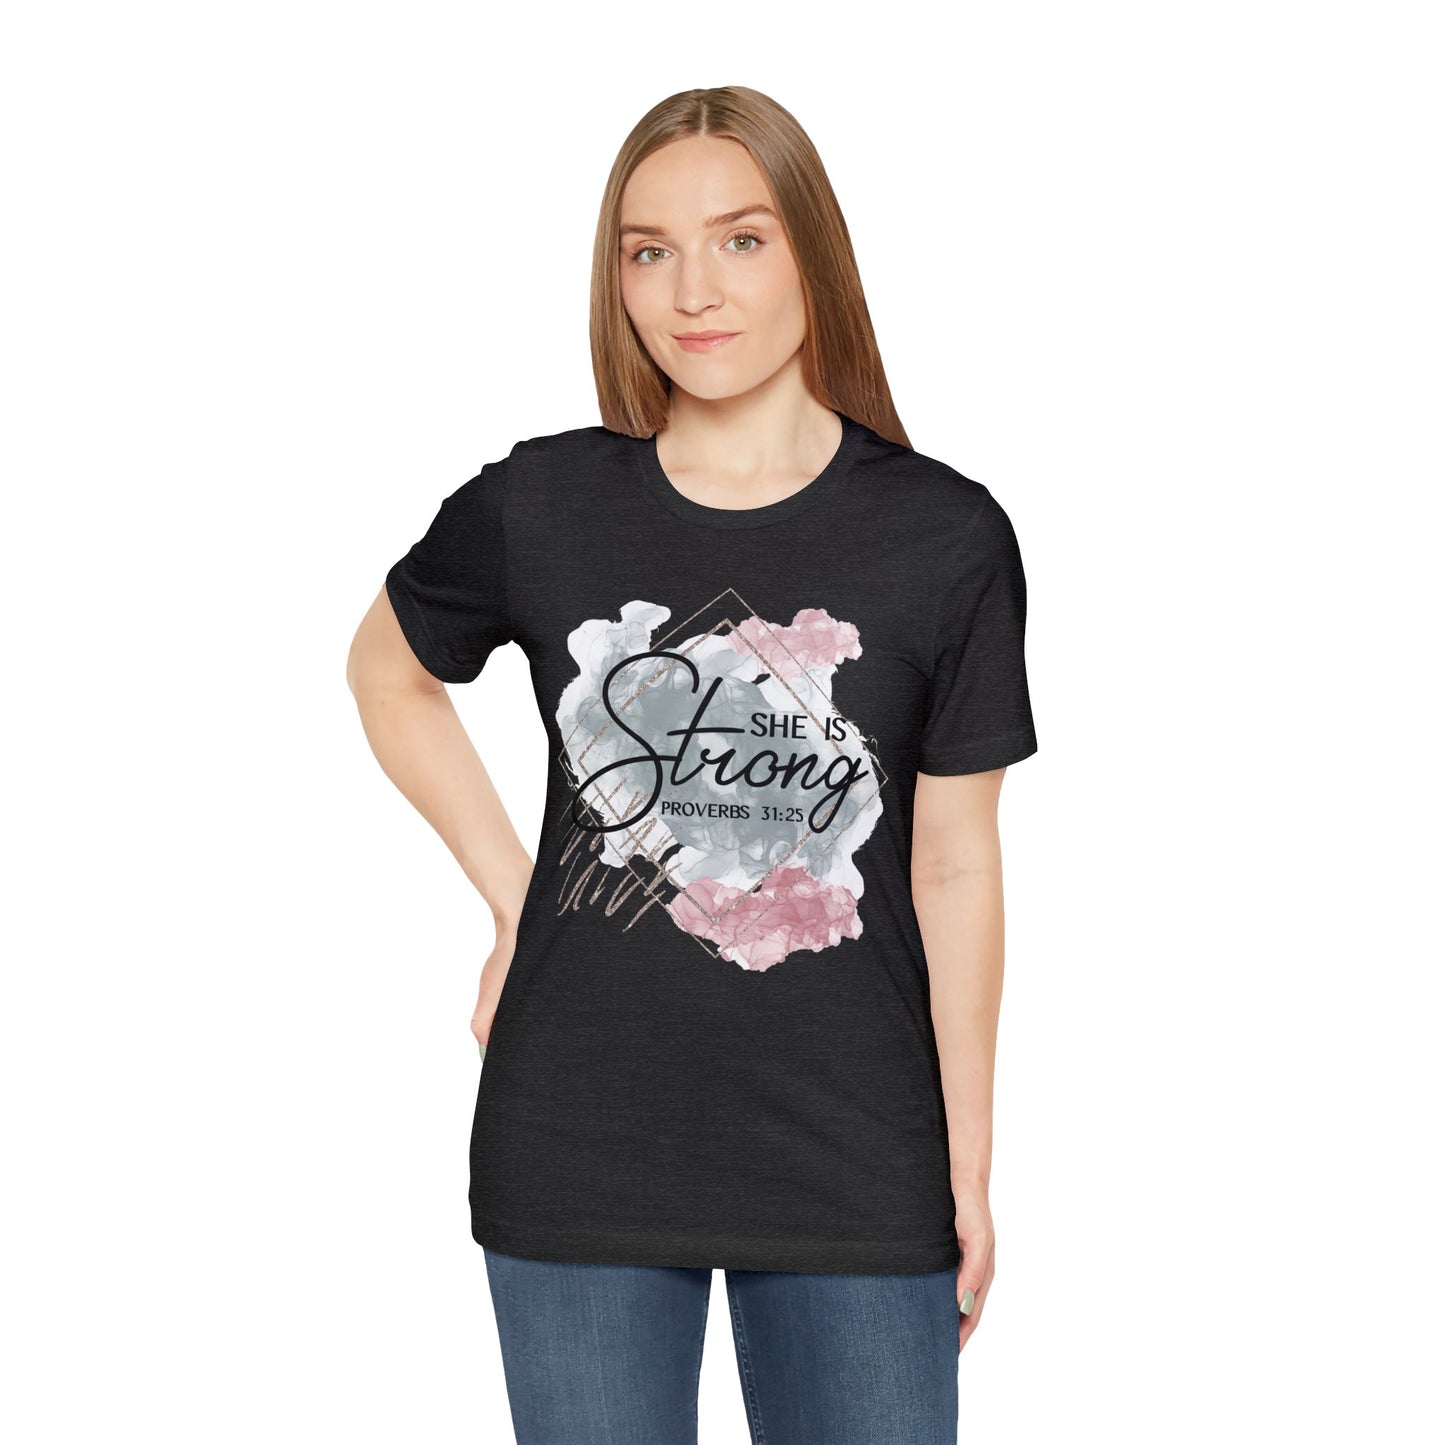 She Is Strong Shirt, Faith T-Shirt, Religious Tee, Gift for Christian Friend (Faith-57)